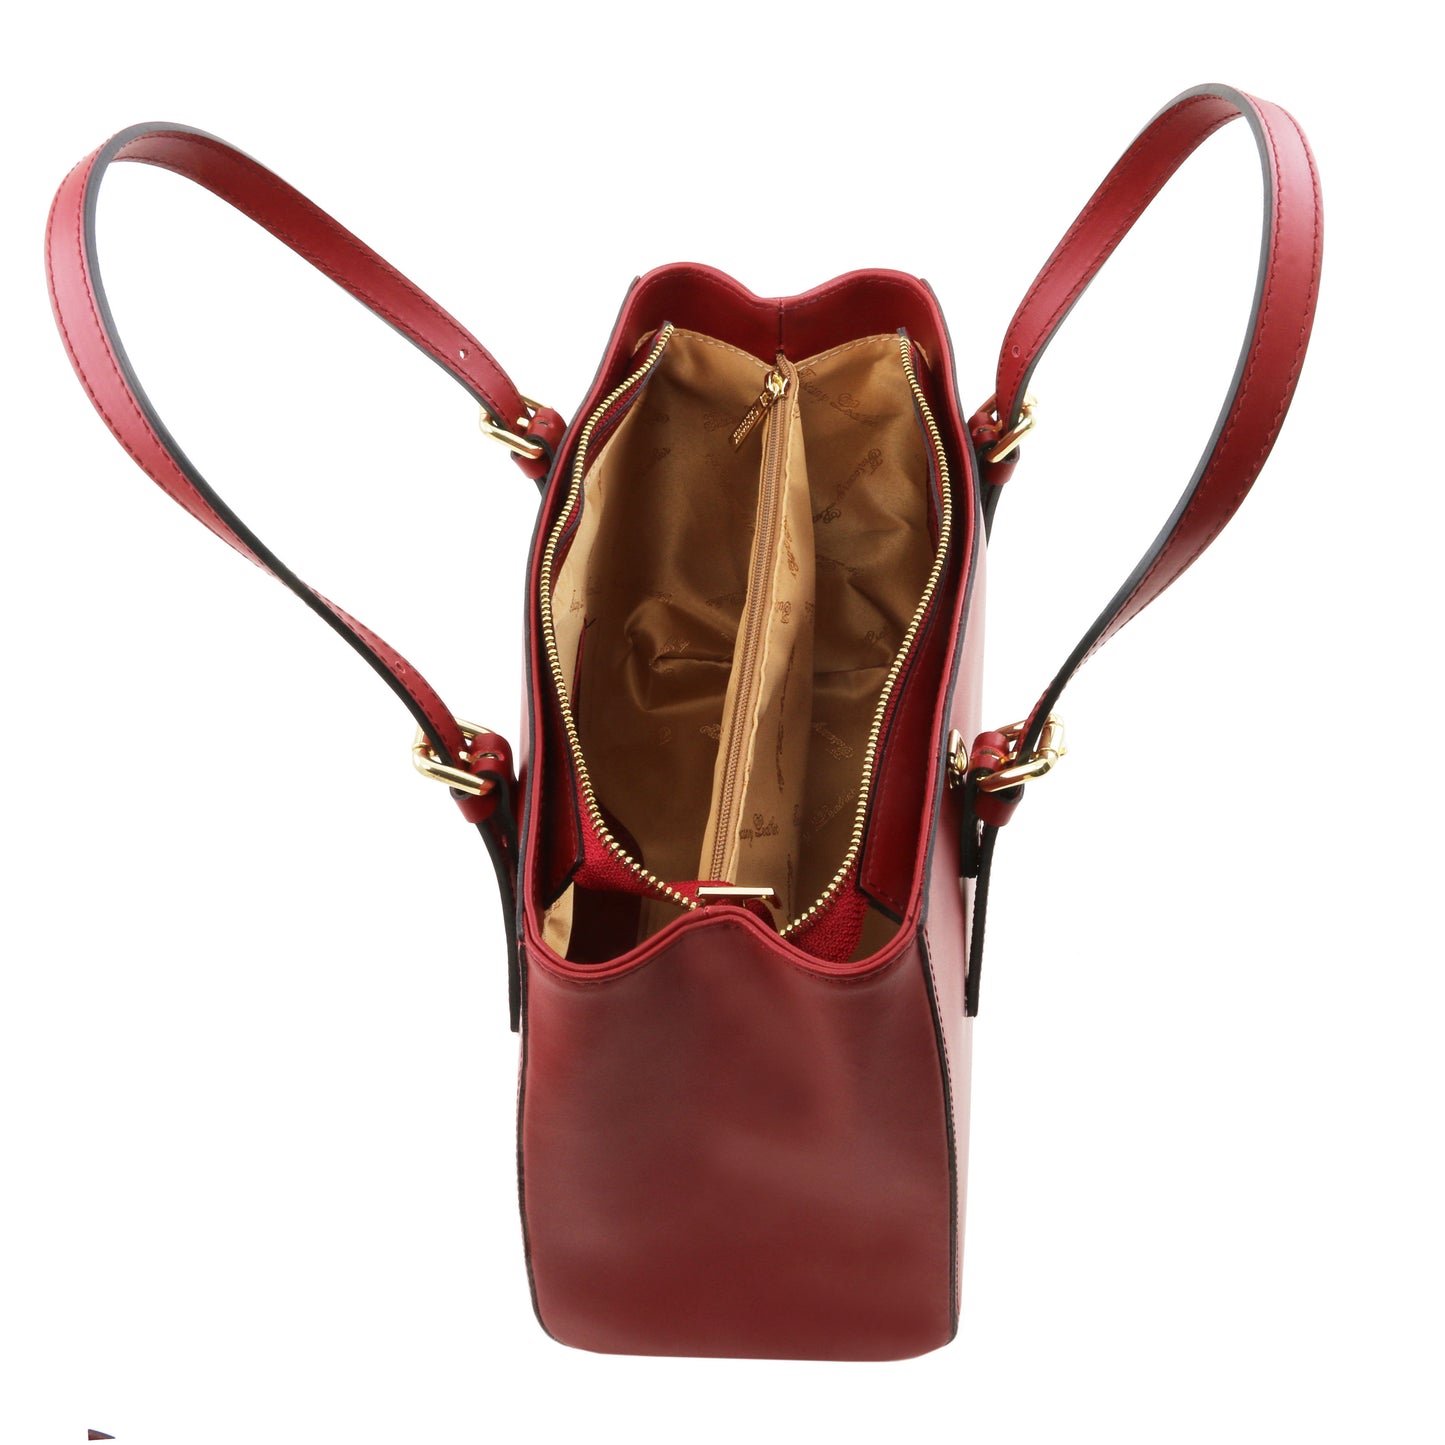 Aura - Handtasche Leder Rot